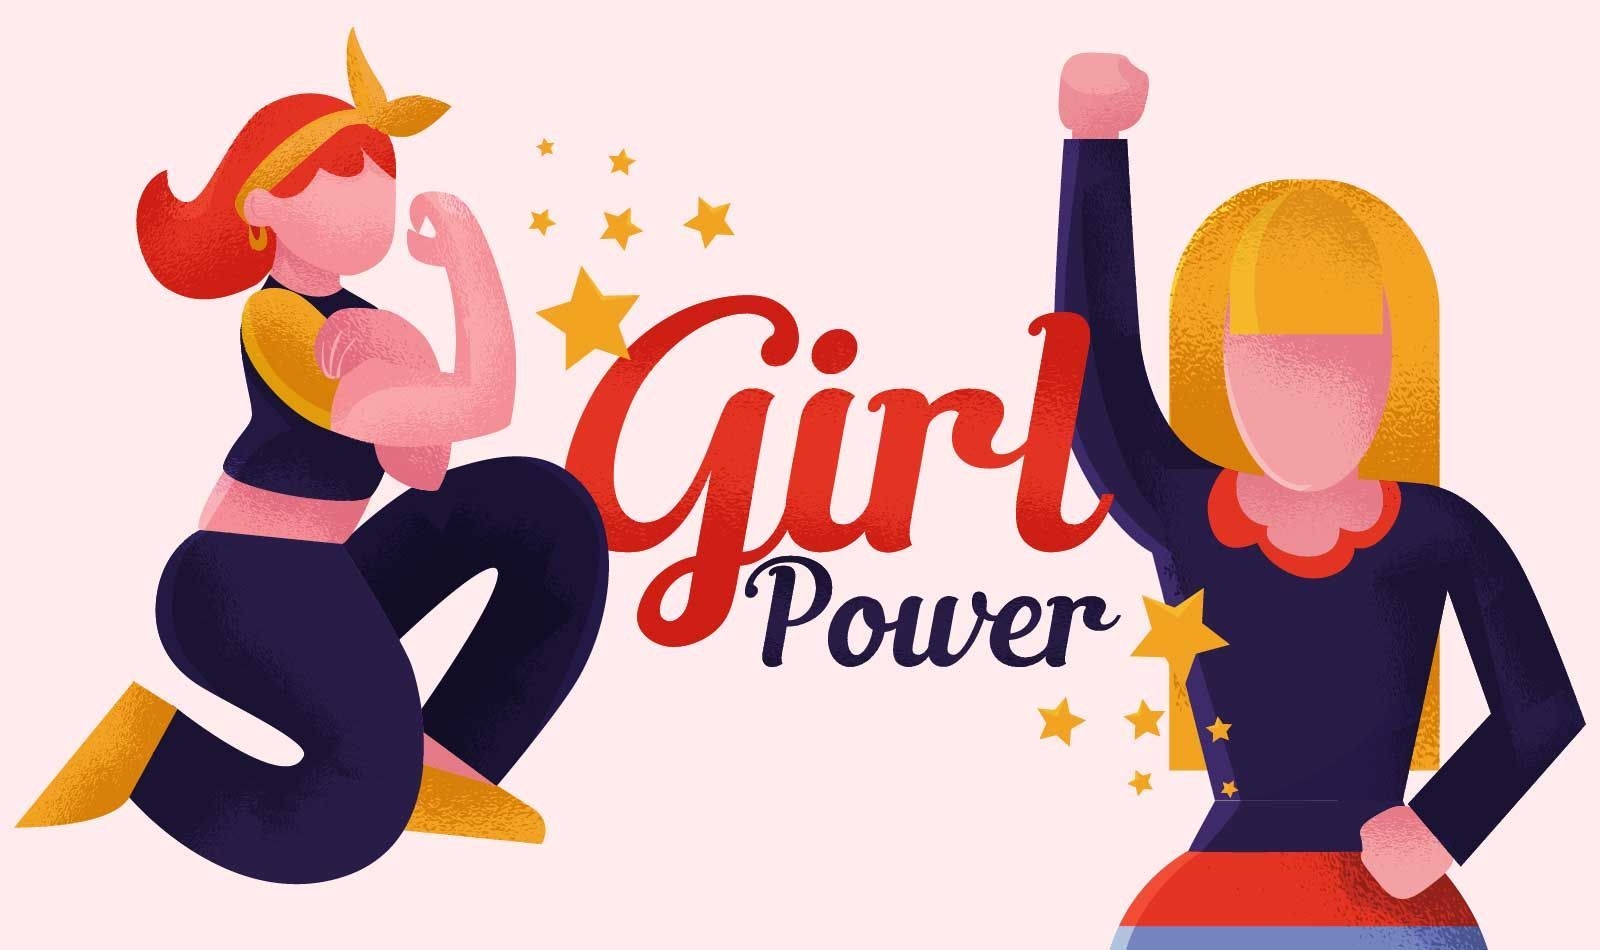 Ilustraci?n feminista de girl power